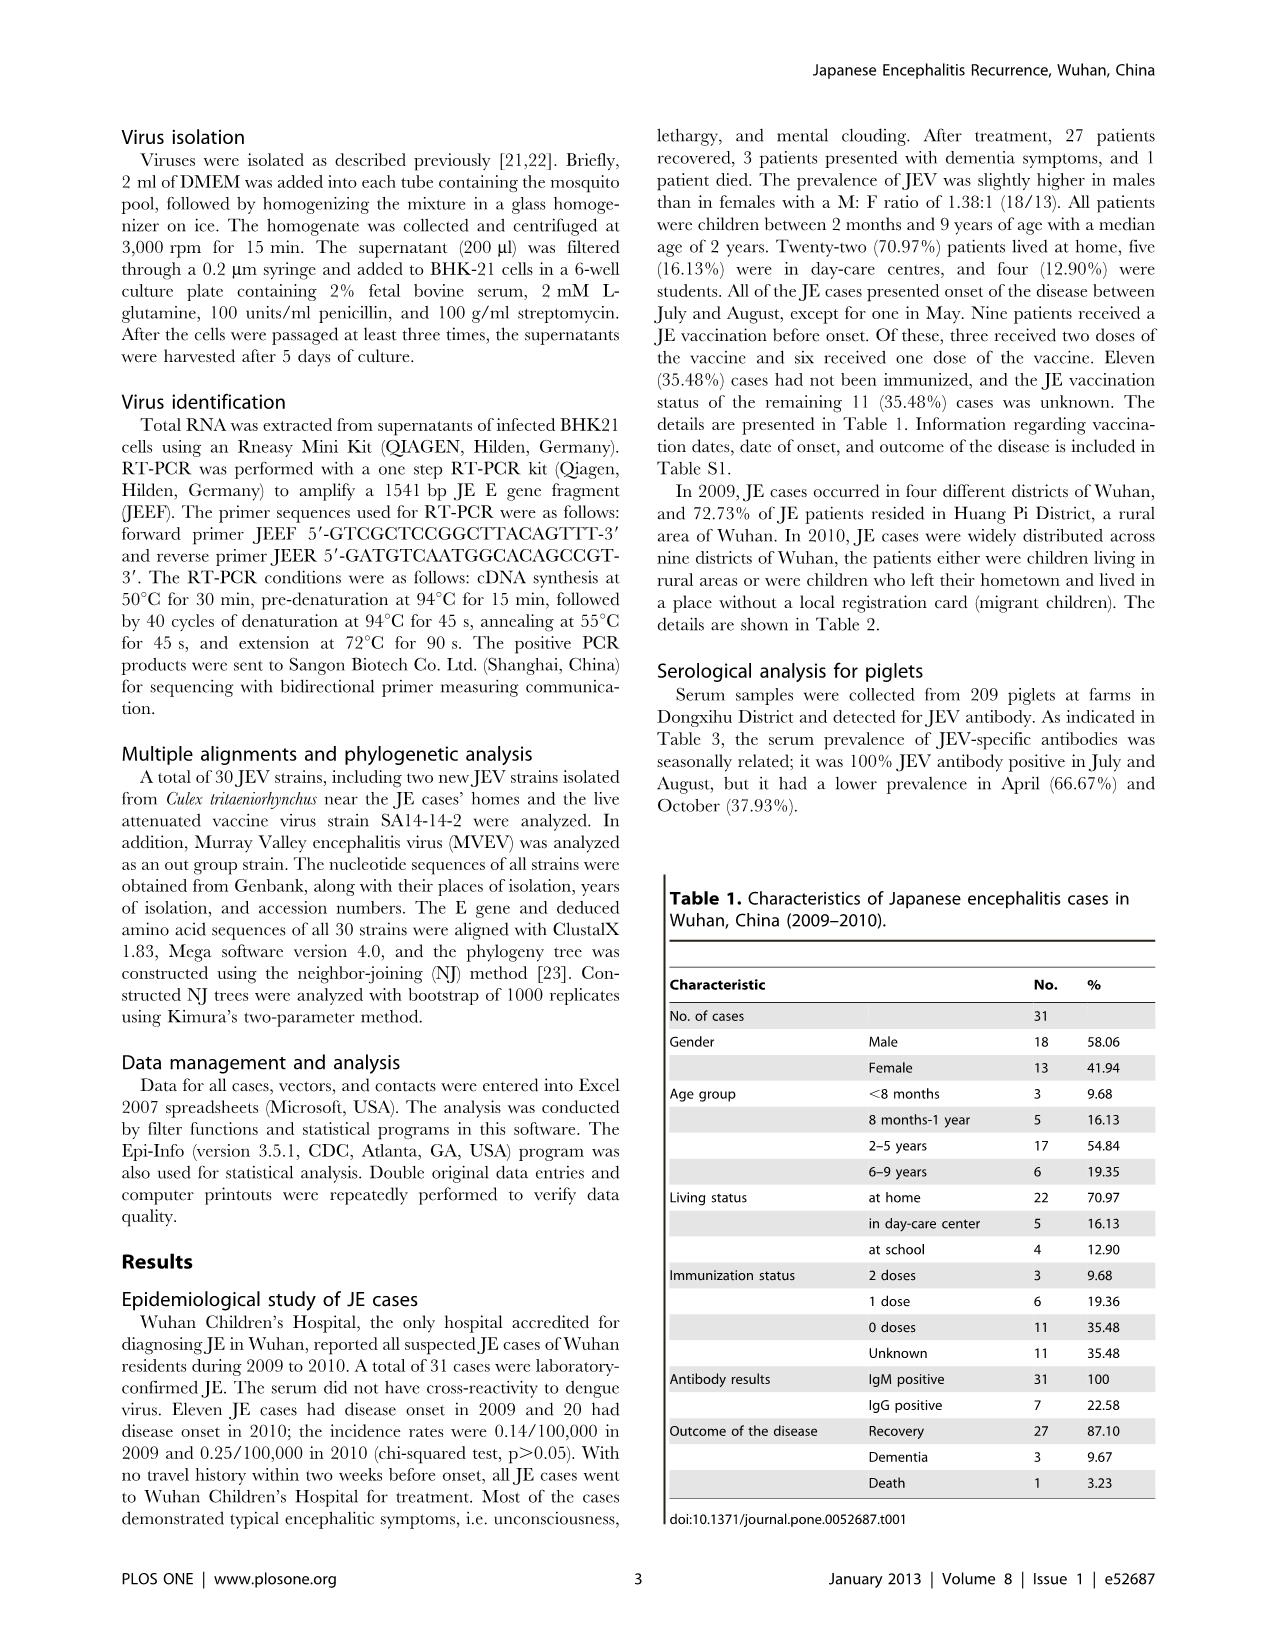 Recurrence of Japanese Encephalitis Epidemic in Wuhan, China, 2009-2010 trang 3